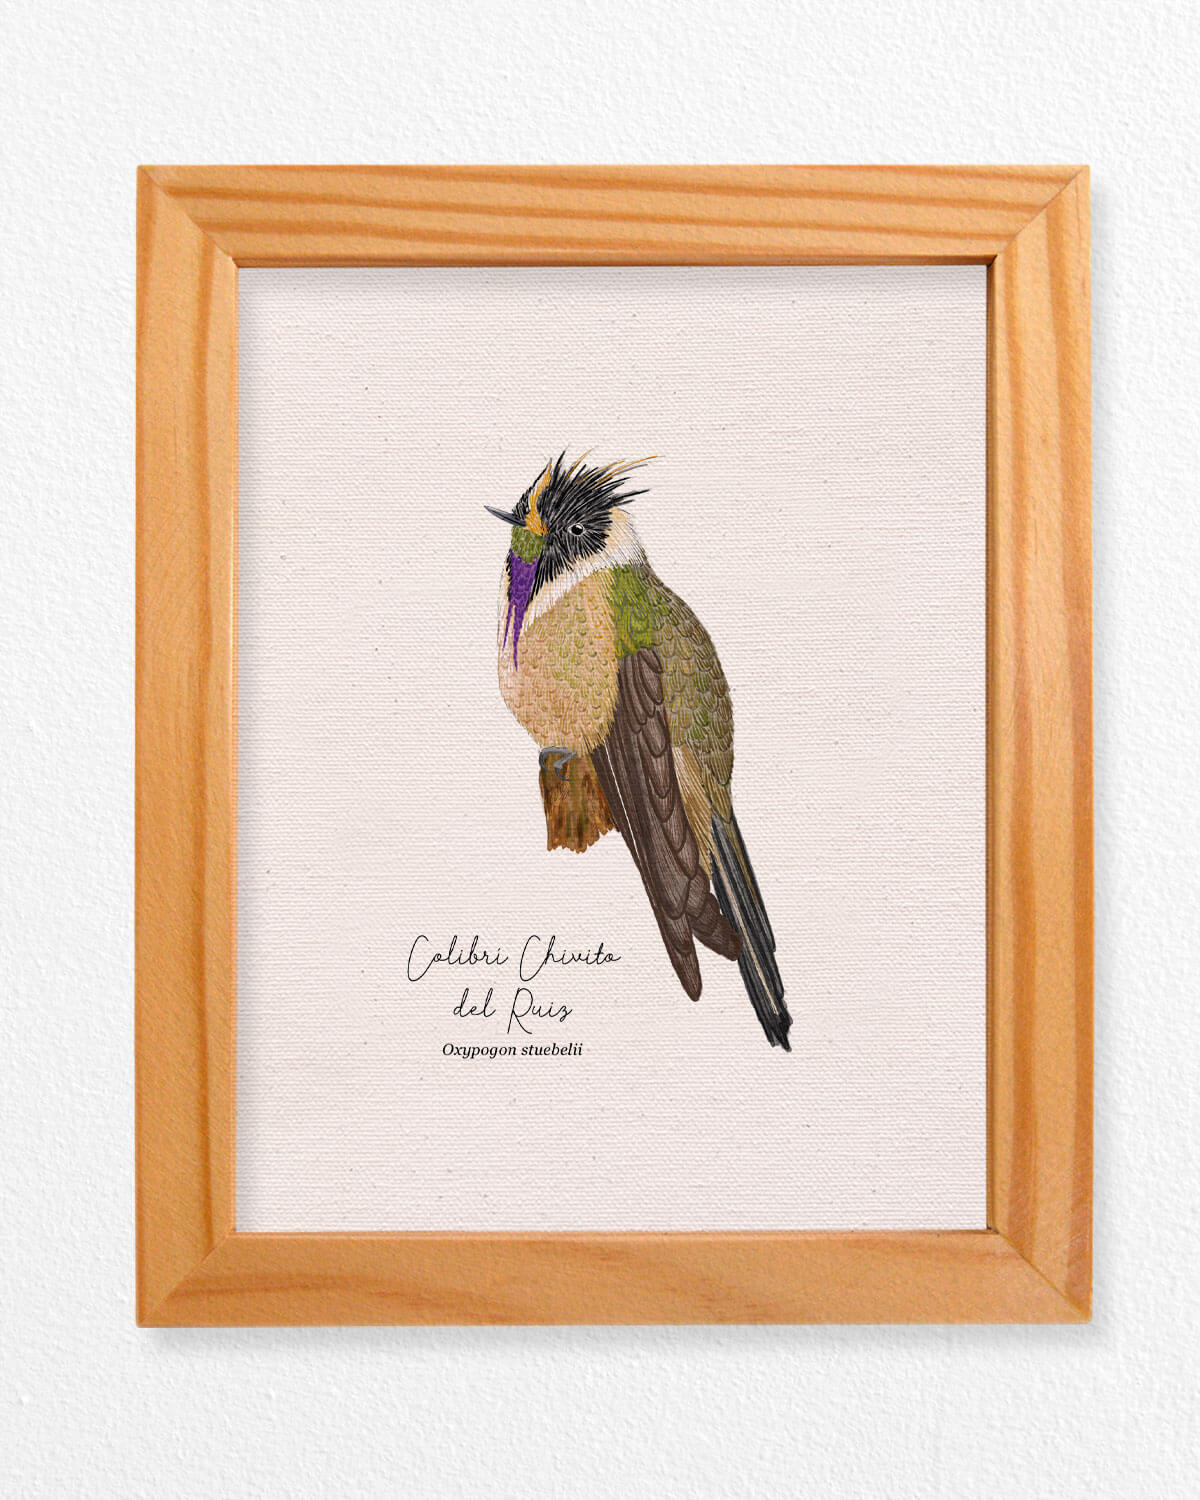 Colibri Chivito ave colombia aves de colombia cuadros regalos souvenirs colombianos Colombia arte artesanías mapas postales decoracion